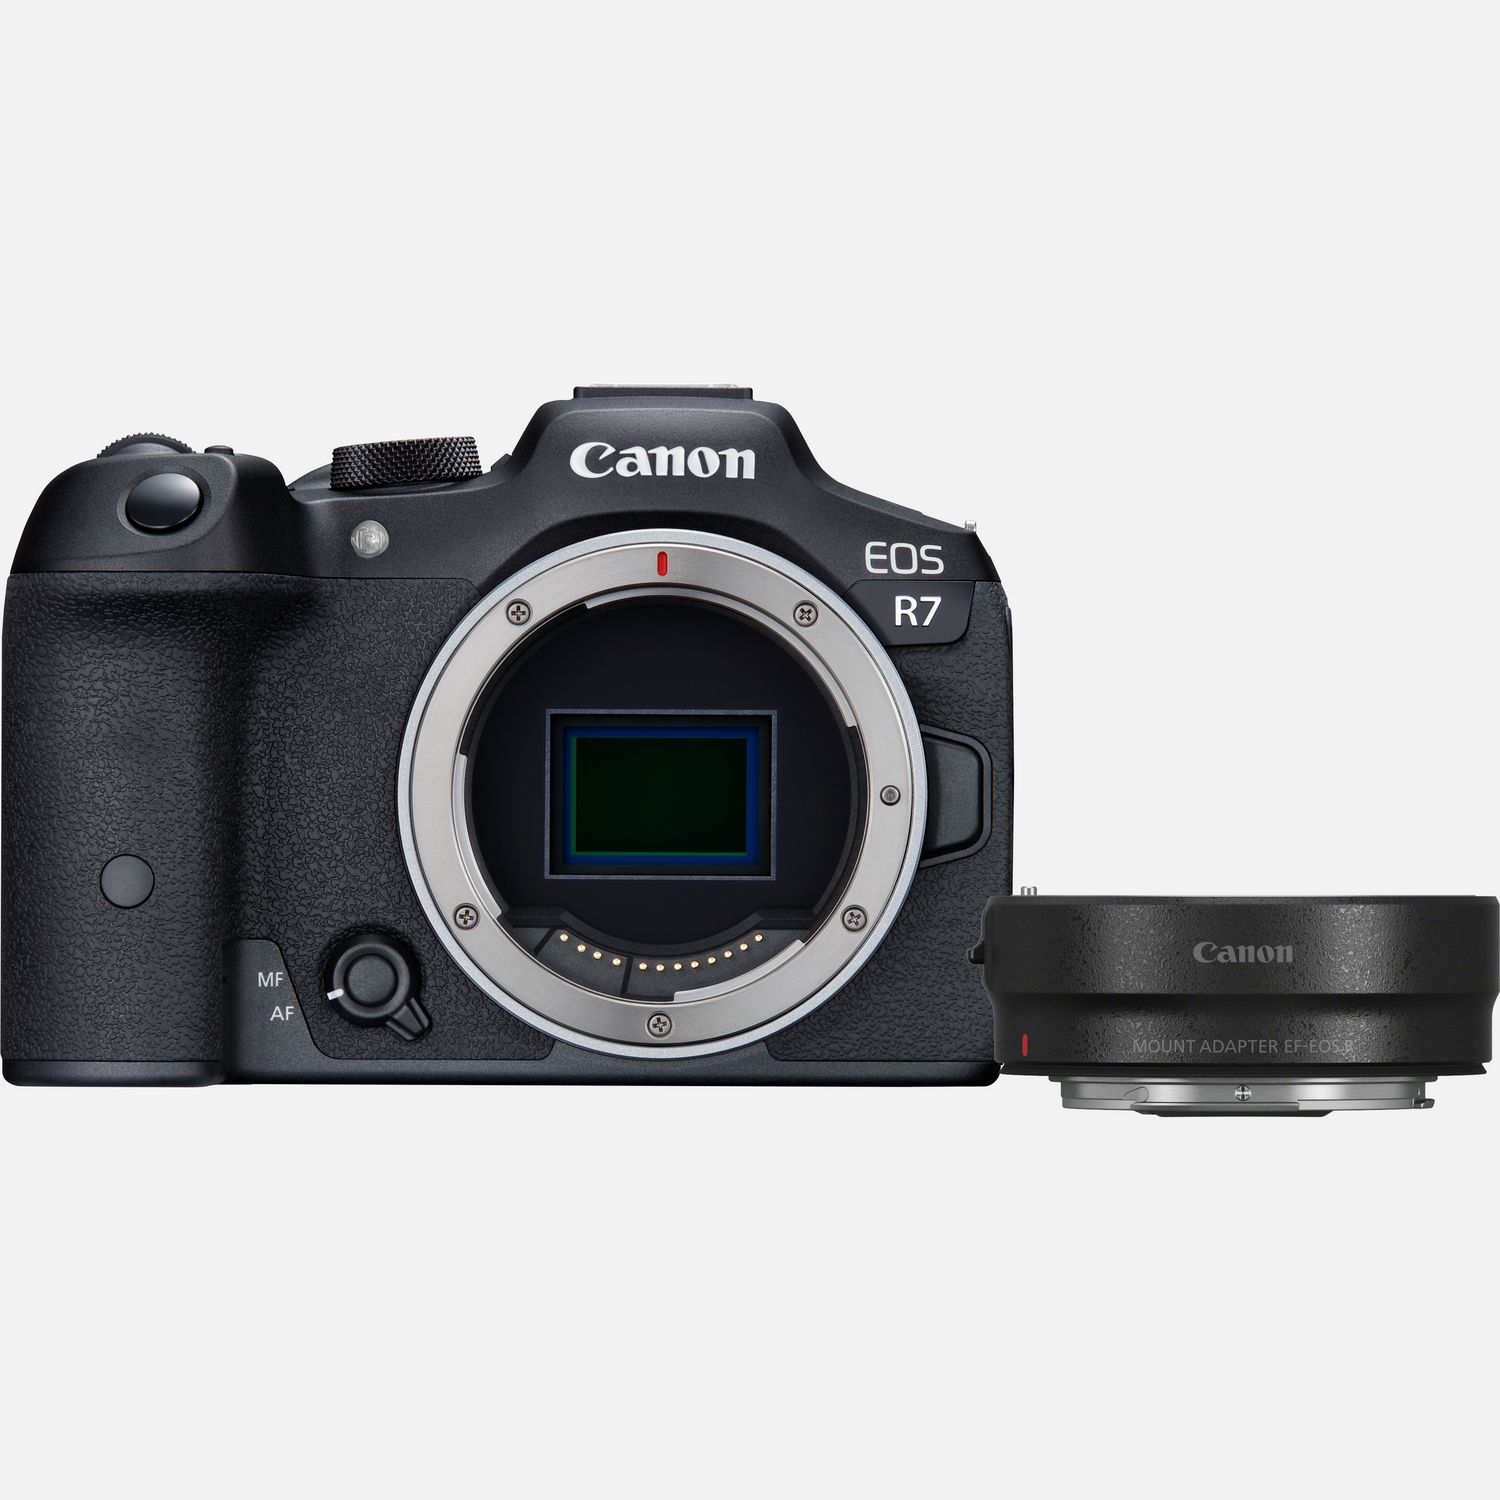 Die Canon EOSR7 ist eine fortschrittliche spiegellose Kamera des EOSR Systems fr Foto-Begeisterte, die ihre kreativen Mglichkeiten erweitern mchten. Dieses DSLR-Upgrade ist sehr schnell  ideal fr die Sport- und Naturfotografie , und der APS-C-Sensor bietet dir eine grere Reichweite, die weit entfernte Motive nher heran holt. Als Hybridkamera ermglicht die EOSR7 4K/30p Videoaufnahmen in hervorragender Qualitt (Oversampling von 7K) und einen flssigen 4K/60p Modus, mit dem Bewegungen erstklassige dargestellt werden. Der kamerainterne Bildstabilisator arbeitet mit dem optischen IS des Objektivs zusammen und sorgt fr flssige Videos und Fotos bei Belichtungszeiten, die 7 Stufen lnger als blich sein knnen. Hybrid-Fotografen werden auch von unserem Dual Pixel CMOS AFII mit Deep-learning begeistert sein, der Motive verfolgt und scharf hlt.  Vorteile      Einfhrungsangebot mit Canon Adapter EF-EOSR: Damit kannst du ganz einfach von deiner DSLR aufrsten: Im Lieferumfang befindet sich der Canon Adapter EF-EOSR. Damit kannst du die vorhandenen EF und EF-S Objektive von deiner DSLR verwenden und erhltst so mit der EOSR7 die gleiche Qualitt, Leistung und Funktionalitt. Vorbehaltlich der Verfgbarkeit und nur whrend der Markteinfhrung von Canon EOSR7 und EOSR10          Bei der Action-, Sport- und Wildlife-Fotografie begeistert die EOSR7 mit der Fhigkeit, sich schnell bewegende Motive mit ihrem Deep-learning Dual Pixel CMOS AFII Fokussystem zu verfolgen  Menschen, Fahrzeuge und Tiere, einschlielich Vgel im Flug          Die EOS R7 ist schnell. Richtig schnell. Fotografiere dynamische Motive mit bis zu 15 B/s im mechanischen Verschlussmodus oder mit bis zu 30 B/s mit dem leisen elektronischen Verschluss  und das alles mit AF und AE, damit jeder flchtige Moment perfekt aussieht          Egal, ob du 32,5-Megapixel-Fotos oder aufwndige 4K-Videos aufnimmst, diese spiegellose APS-C-Kamera bietet ein ideales Gleichgewicht zwischen Detailgenauigkeit und Low-Light-Eigenschaften mit einer maximalen Empfindlichkeit von ISO 32.000          Auch fr Videoaufnahmen bietet die Kamera zahlreiche Optionen. Du hast die Wahl: Hochwertiges 4K/30p Material, das aus Oversampling der 7K-Sensordaten erstellt wird, oder 4K/60p fr flssige Bewegungen. Canon Log 3 gewhrleistet die volle Kompatibilitt mit deinem Bearbeitungs-Workflow und ermglicht eine einfache Farbkorrektur          Durch den APS-C-Sensor haben die Objektive ein engeres Sichtfeld als mit einer Vollformatkamera, was die Kamera zu einer groartigen Option fr die Sport- und Wildlife-Fotografie macht. Der Sensor macht die EOSR7 auch zu einer sehr mobilen spiegellosen Kamera          ber das integrierte WLAN teilst du die Inhalte mit deinen Followern schnell und einfach. Kopple die Kamera mit deinem Smartphone oder stelle eine direkte WLAN-Verbindung fr Uploads in die Cloud ber image.canon oder das hochwertige Livestreaming auf YouTube her          Zwei Karten-Slots helfen dir bei der optimalen Organisation der Aufnahmen. Erstelle direkt bei der Aufnahme ein Backup oder speichere Fotos und Videos auf unterschiedlichen Karten. Dank automatischem Wechsel zwischen den Speicherkarten verpasst du keinen Moment          Zum klassischen EOS Design kommen innovative neue Bedienelemente wie ein kombinierter AF-Feld-Auswahl-Schalter und ein Wahlrad. Der OVF-Simulationsmodus hilft beim Umstieg von einer DSLR. Diese EOSR Kamera ist mit RF/RF-S Objektiven kompatibel. EF/EF-S Objektive knnen ber einen Adapter ebenfalls verwendet werden, was sie zu einem ausgezeichneten Upgrade von einer APS-C-DSLR macht          Lieferumfang       EOS R7 Kameragehuse         Bajonettadapter EF-EOS R         Kamera-Gehusedeckel R-F-5         Tragegurt ER-EOS R7         Akkuladegert LC-E6E         Akku LP-E6NH         Abdeckung fr Akkufach         Netzkabel         Anleitungen              Technische Daten              Dual Pixel CMOS AF II Der AF erkennt und verfolgt Menschen, Tiere und Fahrzeuge                -5 LW Low-Light-Fokussierung  Przise Fokussierung auch bei wenig Licht                Kombinierter IS  Kombination aus kamerainternem IS und optischem Objektiv-IS fr bis zu 7 Belichtungsstufen (bei einigen RFObjektiven sogar 8 Belichtungsstufen)                15 B/s mit mechanischem Verschluss, 30 B/s mit elektronischem Verschluss  15 B/s fr hochwertige, schnelle Aufnahmen und 30 B/s fr schnelle, leise Aufnahmen                32,5 Megapixel APS-C-Sensor  Das ausgewogene Verhltnis zwischen Auflsung, Geschwindigkeit und Low-Light-Eigenschaften                Fotos mit bis zu ISO 32.000. Video bis ISO 12.800  Erweiterbar auf ISO 51.200 (Fotos) und ISO 25.600 (Videos)                4K/30p und 4K/60p  Hochwertige 4K/30p-Videos mit Oversampling von 7K und 4K/60p fr eine flssige Wiedergabe von Bewegungen                image.canon  Direkte WLAN-Verbindung fr Uploads in die Cloud                YouTube Livestreaming  Livestreaming auf deinem YouTube Kanal                EVF mit 2,36 Mio. Bildpunkten  60 oder 120 B/s Bildwiederholungsrate whlbar                Dreh- und schwenkbares 7,5 cm Touchscreen-Display mit 1,62 Mio. Bildpunkten  Fr Aufnahmen aus ungewhnlichen Blickwinkeln                DIGIC X Prozessor  Reaktionsschnelle Steuerung und minimierte EVF-Verzgerung          Alle technischen Daten zeigen